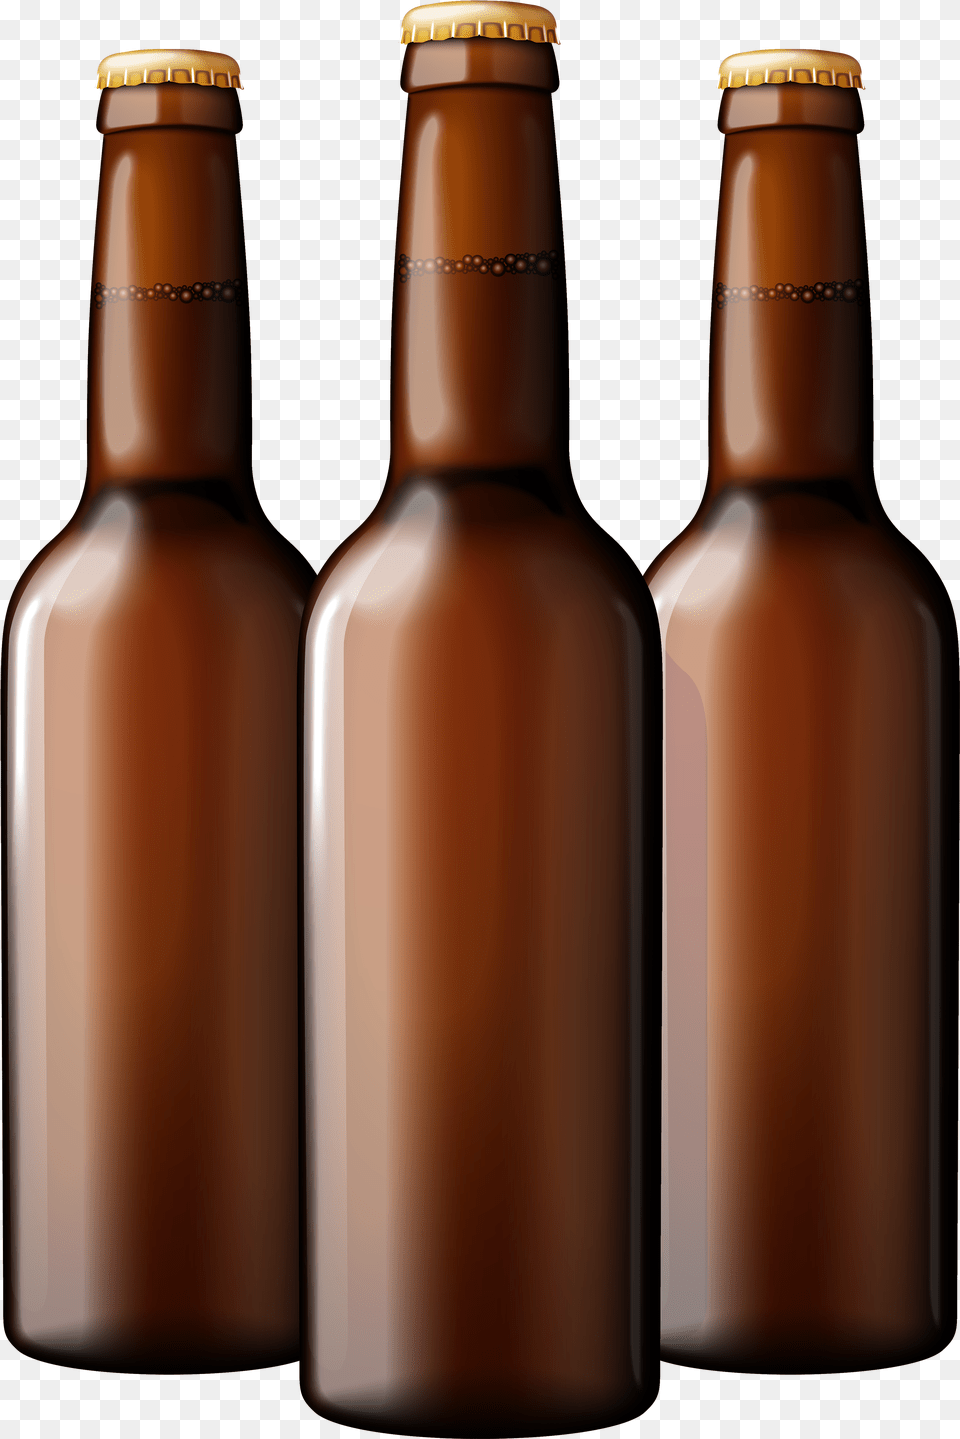 Beer Bottle Beer Bottle Clipart, Alcohol, Beer Bottle, Beverage, Liquor Free Transparent Png